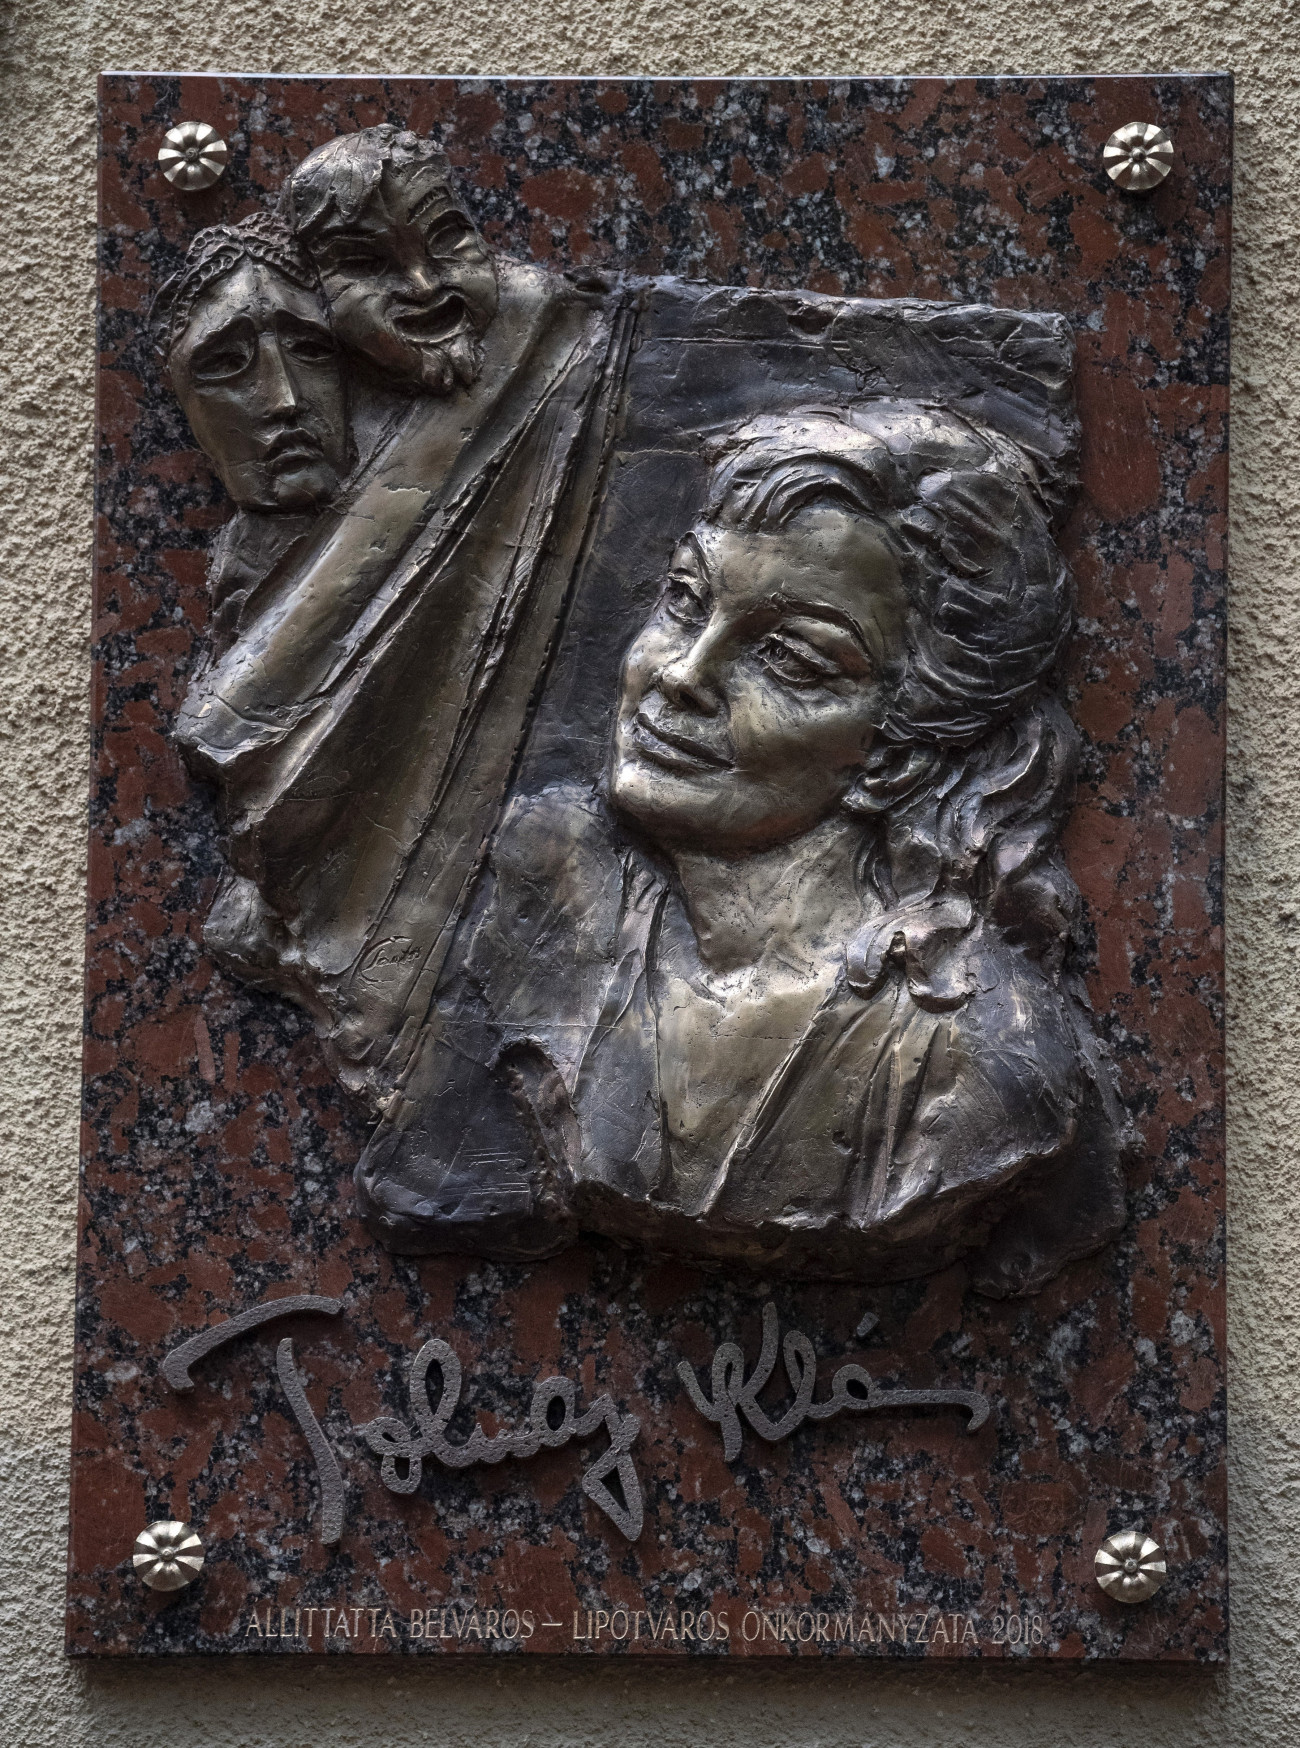 Budapest, 2018. október 25.
Tolnay Klári kétszeres Kossuth-díjas színésznő, érdemes és kiváló művész egykori lakóházának falán elhelyezett domborműves emléktáblája az V. kerületi Fejér György utcában az avató napján, 2018. október 25-én. Az eseményt a Klárika 100 Alapítvány szervezte. Tolnay Klári húsz évvel ezelőtt, 1998. október 27-én hunyt el.
MTI/Szigetváry Zsolt